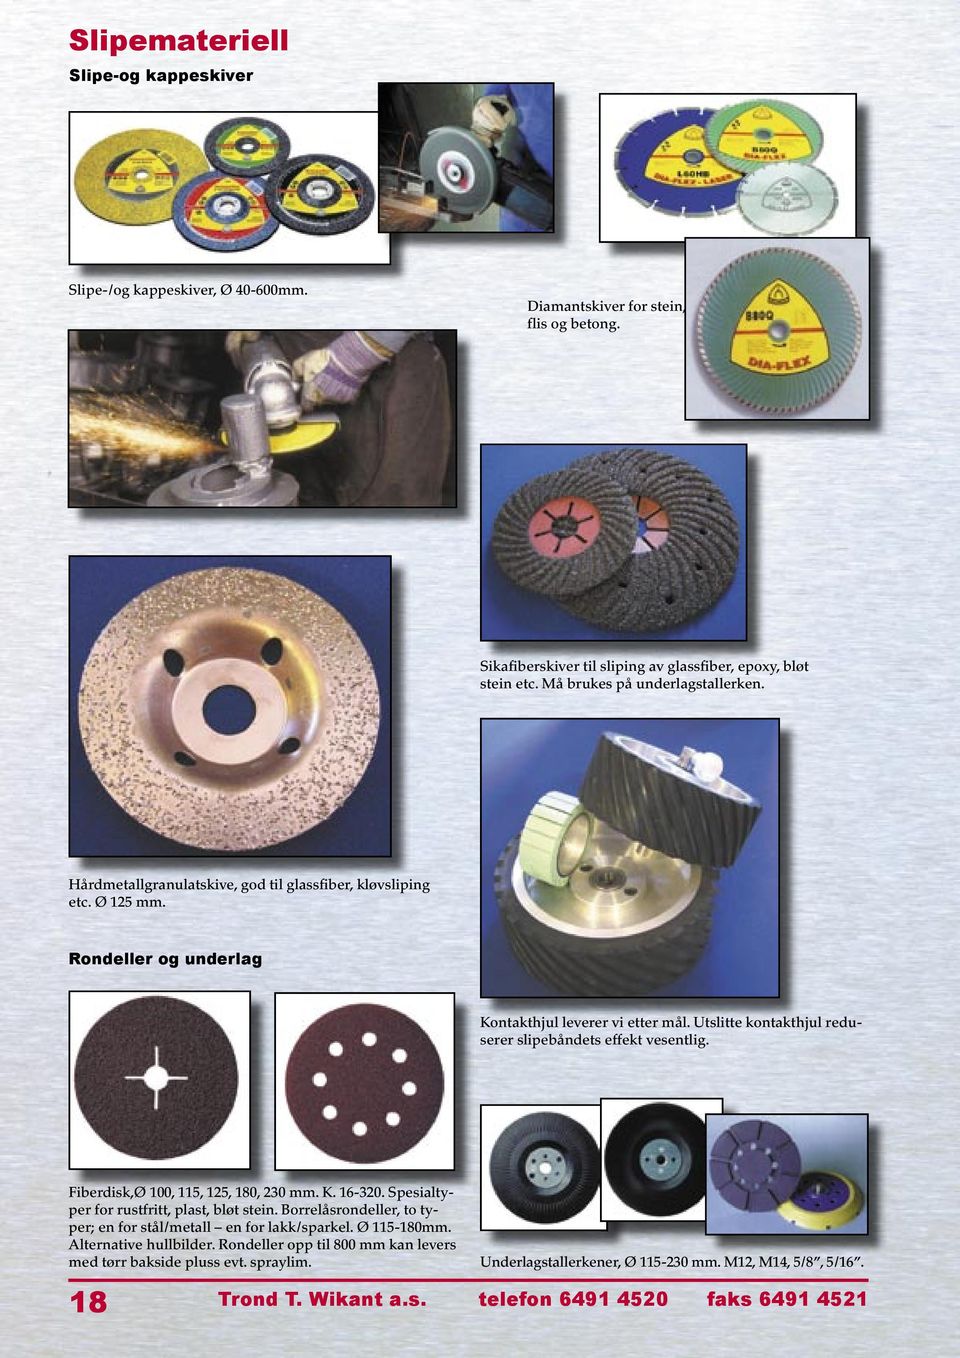 Utslitte kontakthjul reduserer slipebåndets effekt vesentlig. Fiberdisk,Ø 100, 115, 125, 180, 230 mm. K. 16-320. Spesialtyper for rustfritt, plast, bløt stein.